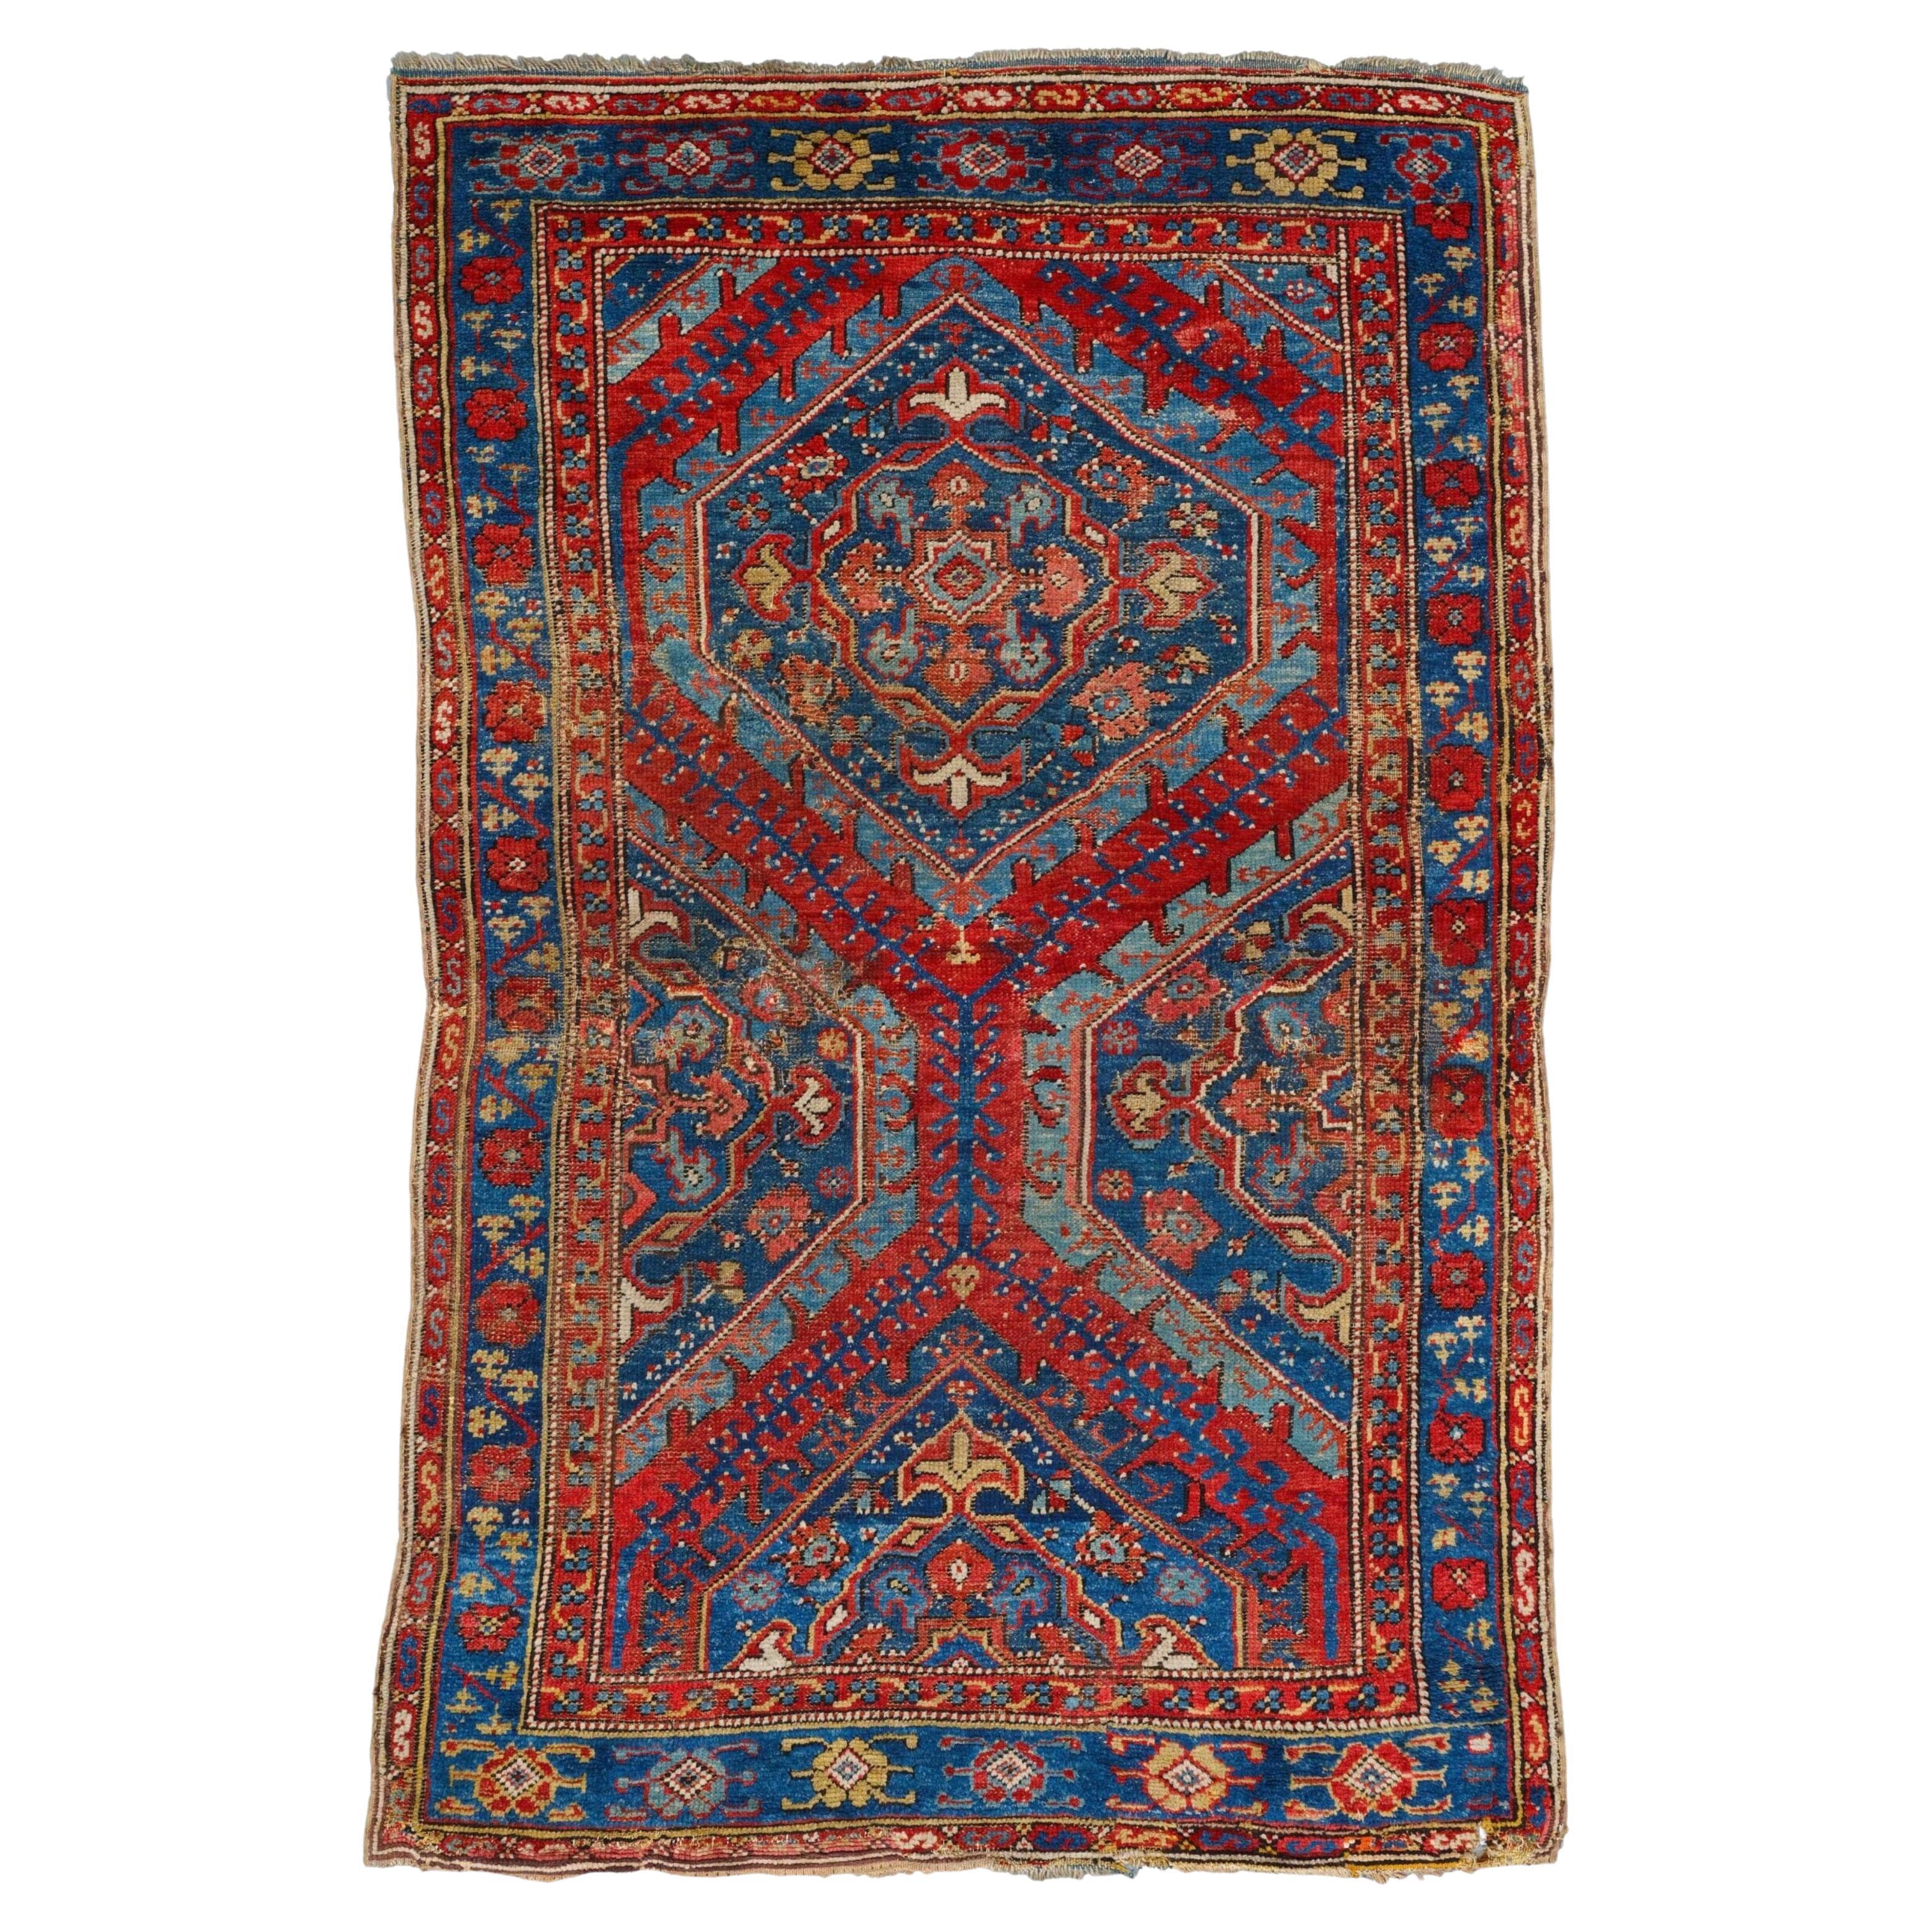 Antique Ushak Rug - Early 18th Century Anatolian Ushak Rug, Antique Carpet